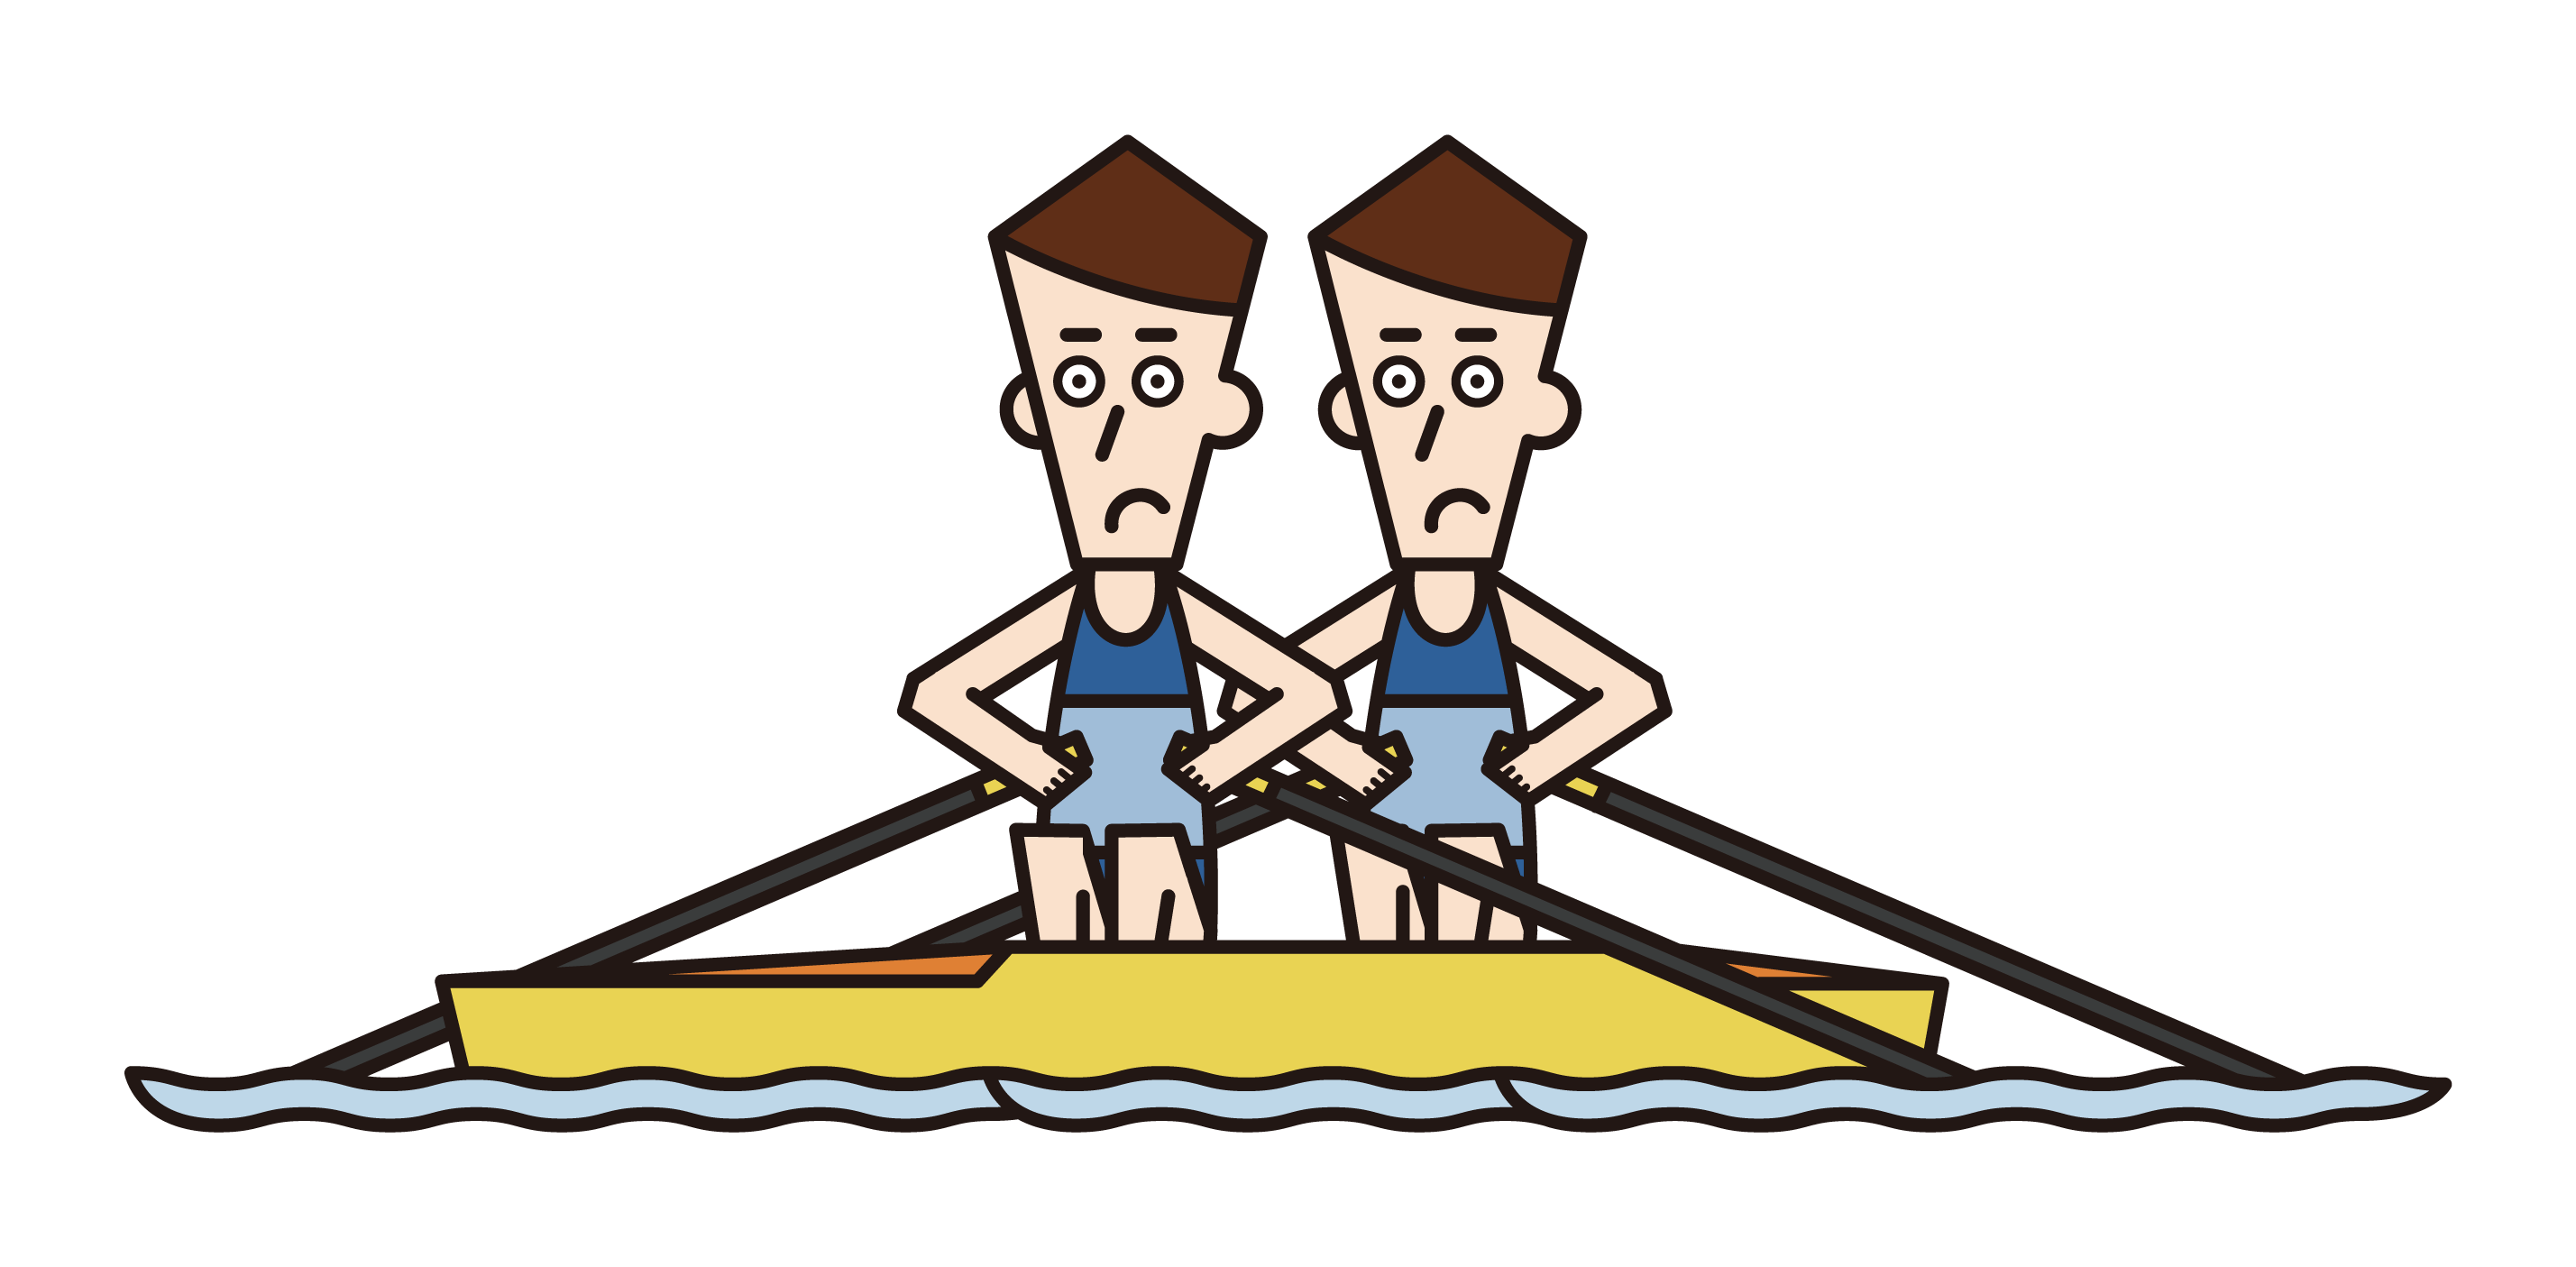 ボート競技（ダブルスカル）の選手たち（男性）のイラスト